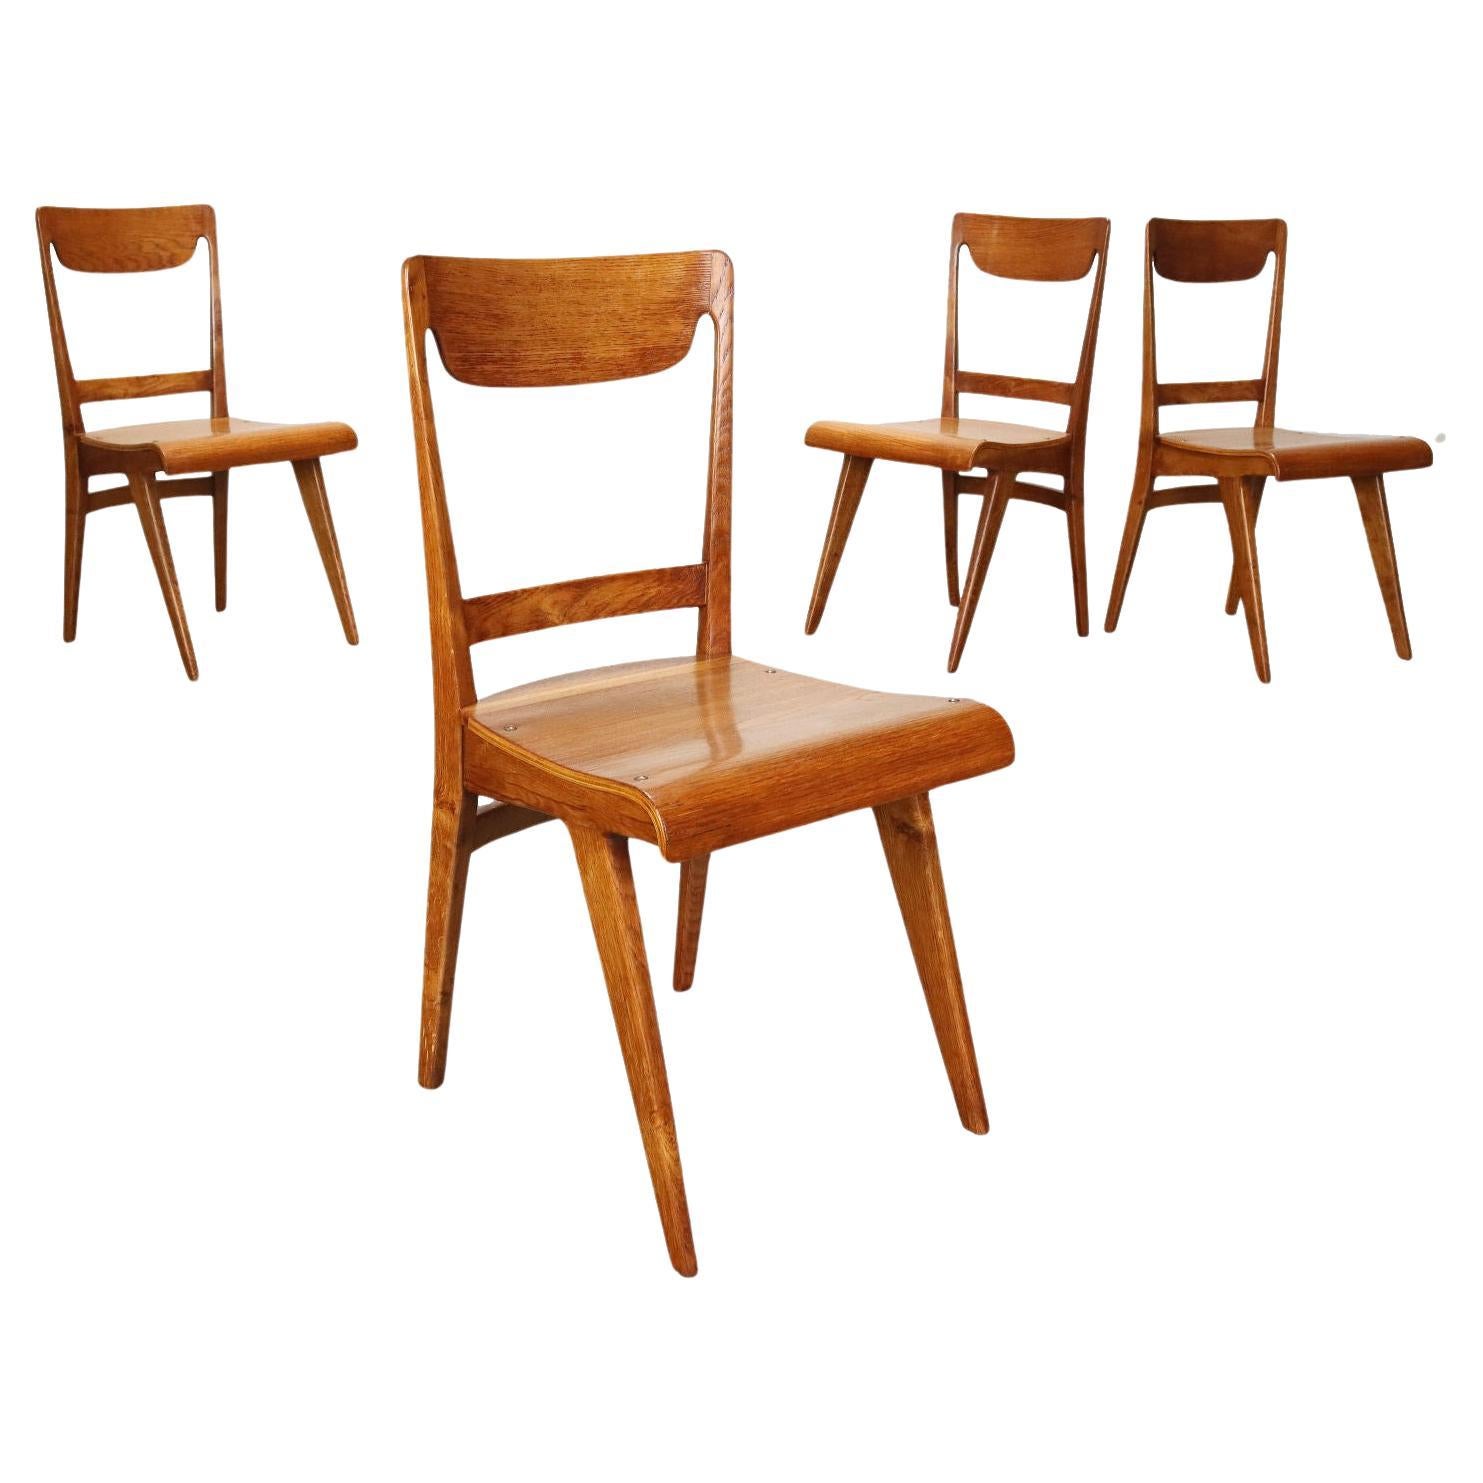 Gruppo di quattro sedie anni 50, in rovere, marroni